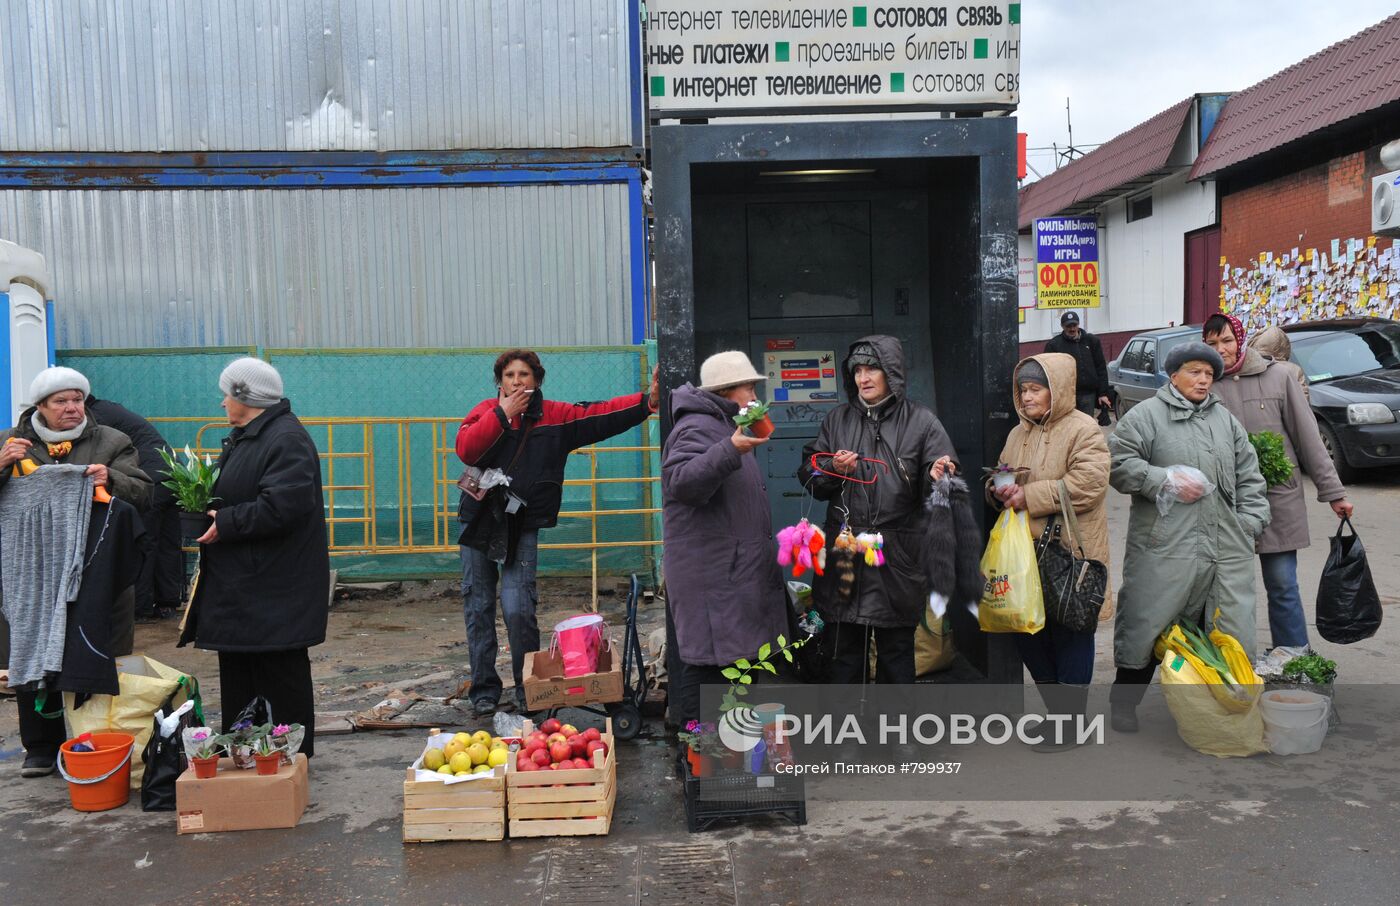 Несанкционированная торговля на улицах Москвы